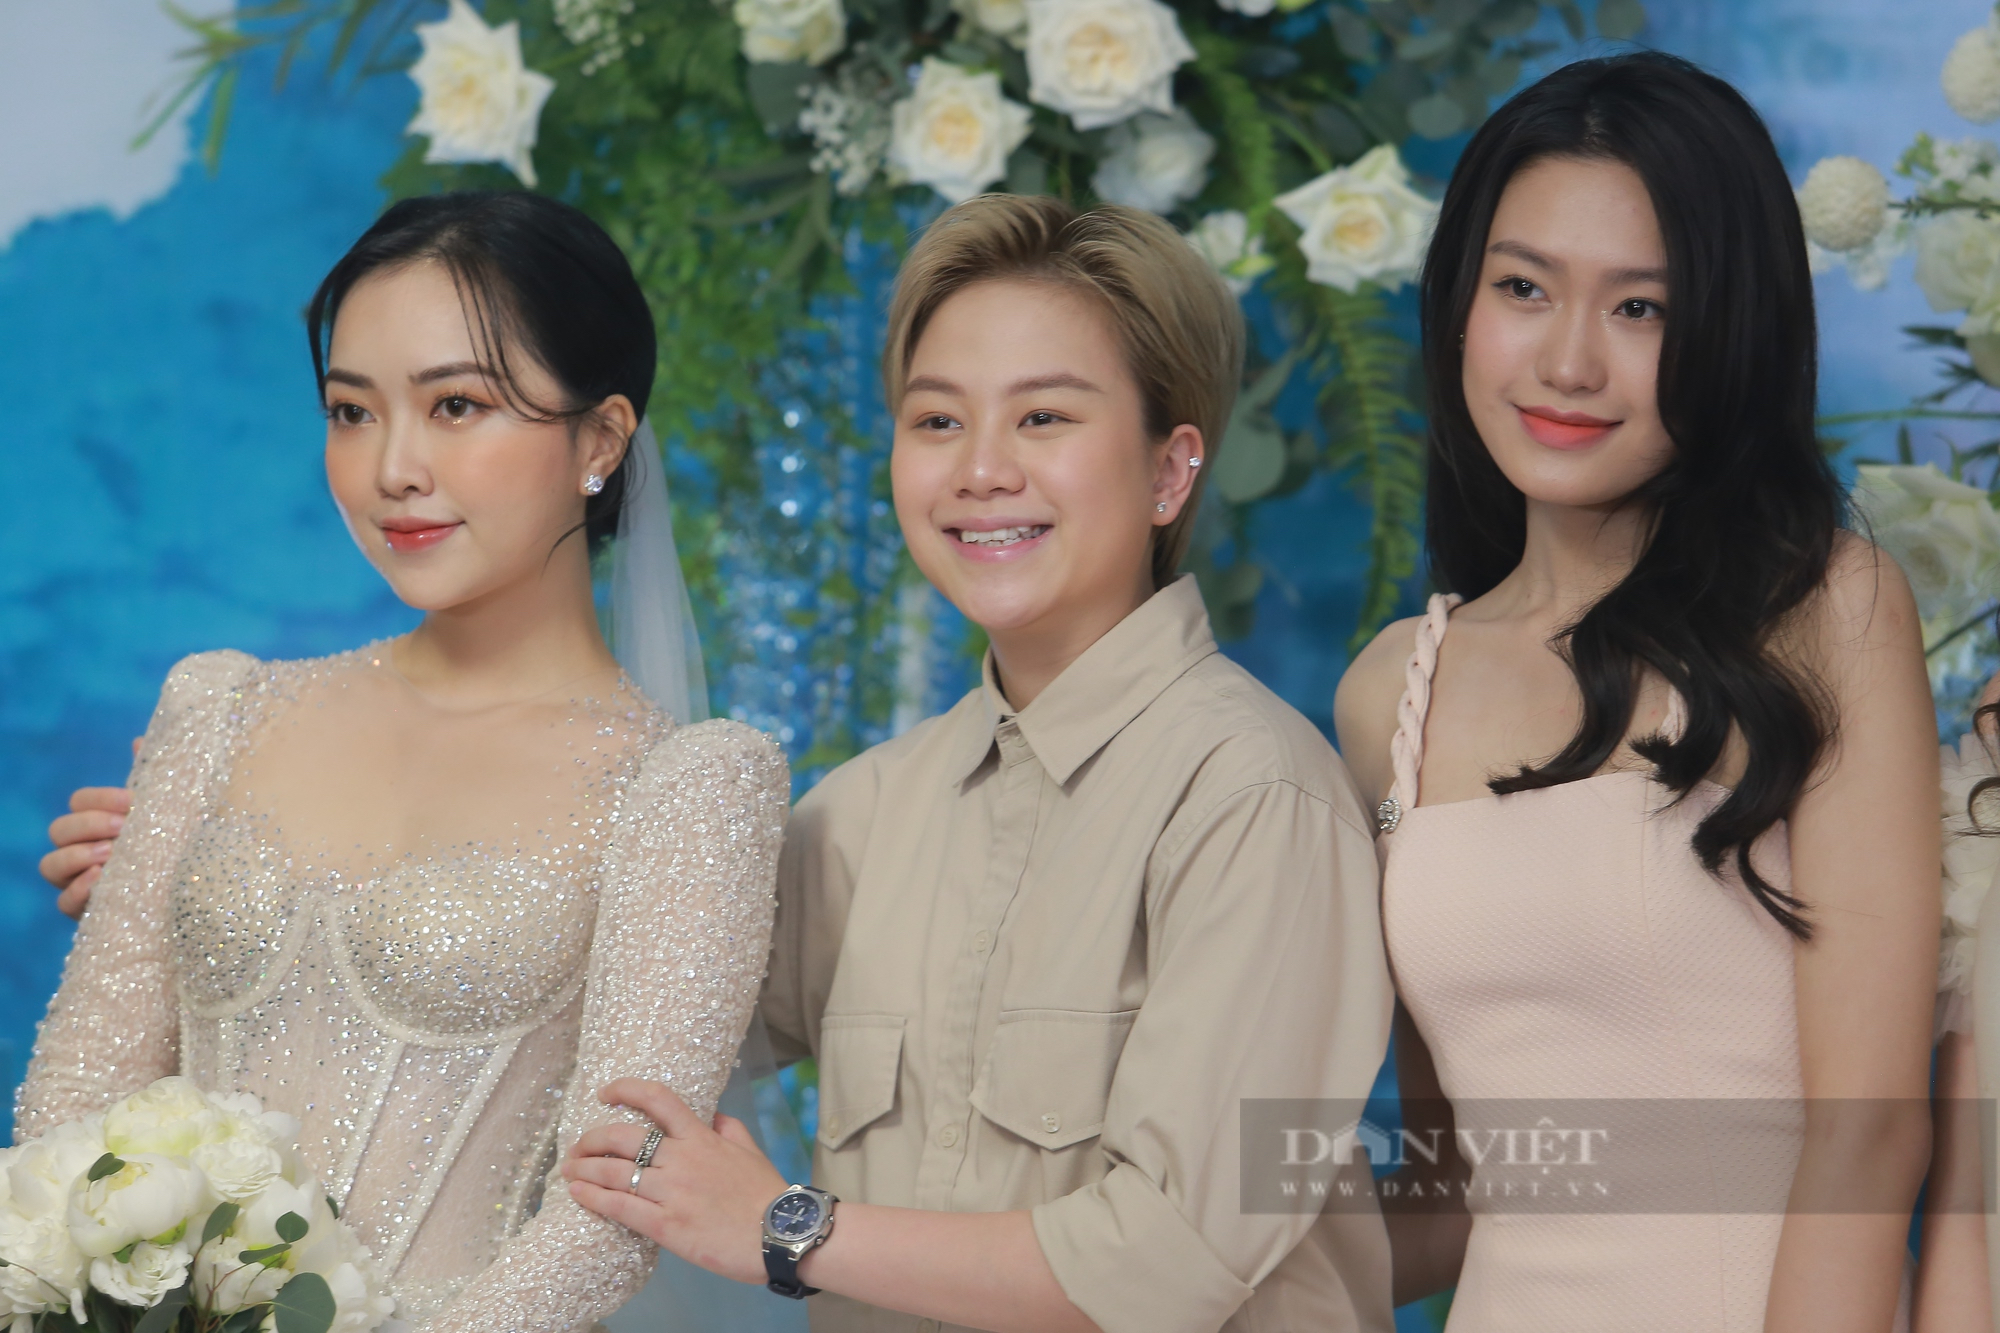 Dàn cầu thủ ĐT Việt Nam xuất hiện trong đám cưới của Đức Chinh - Ảnh 2.